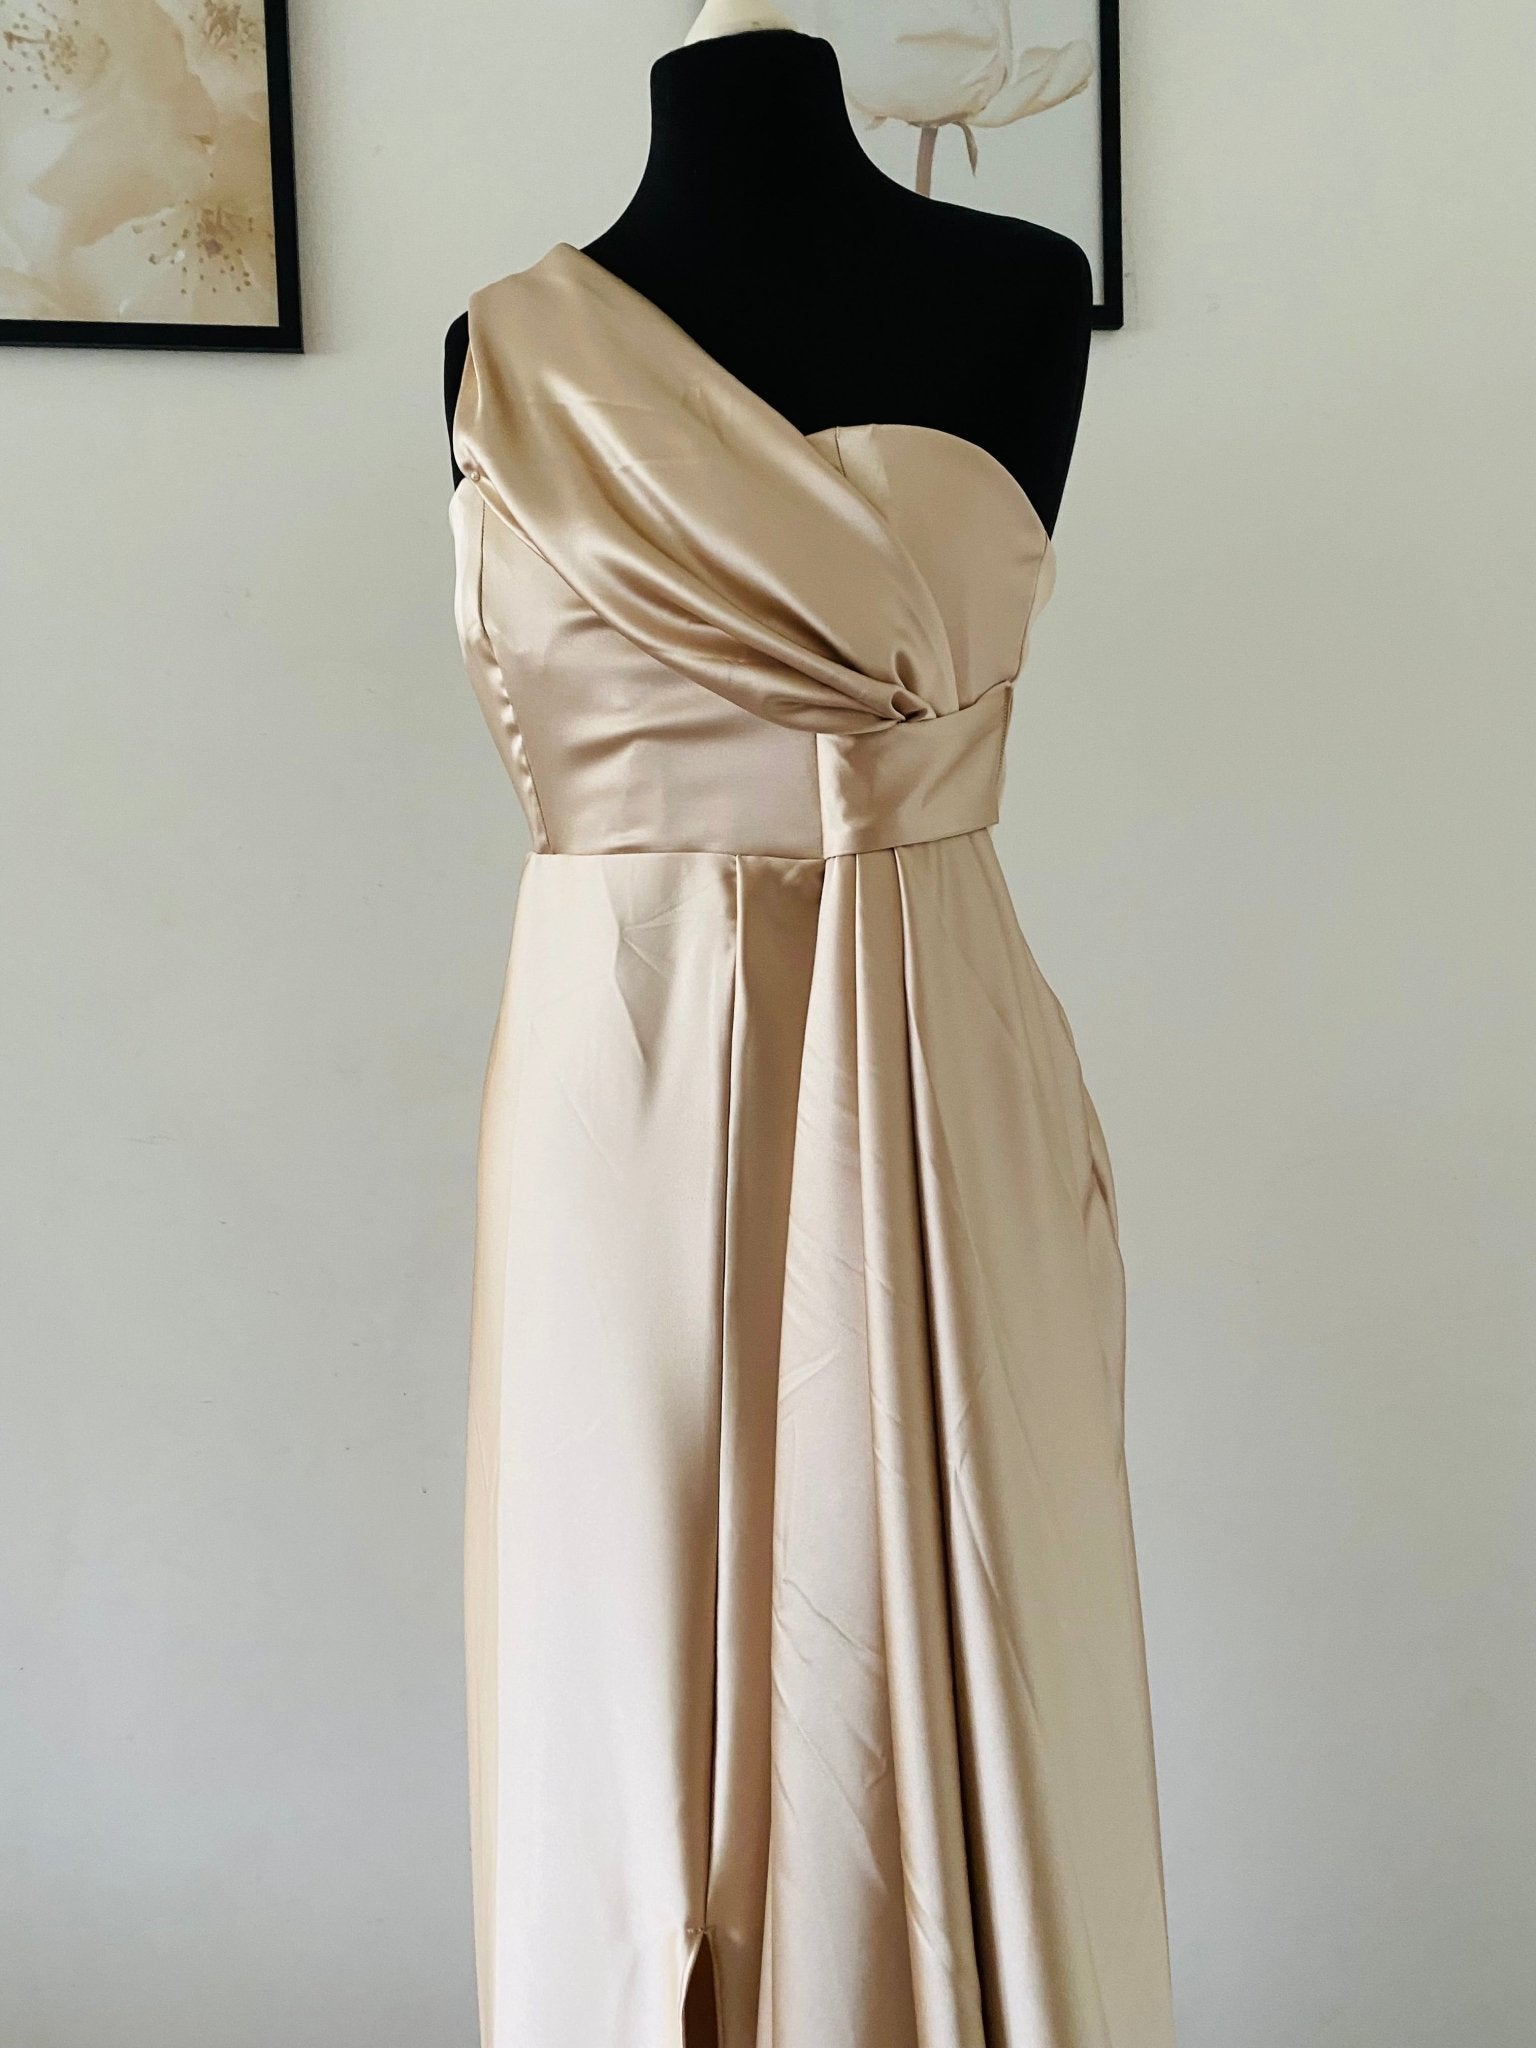 Robe Demoiselle en Satin - Choix de Couleur - Kaysol Couture